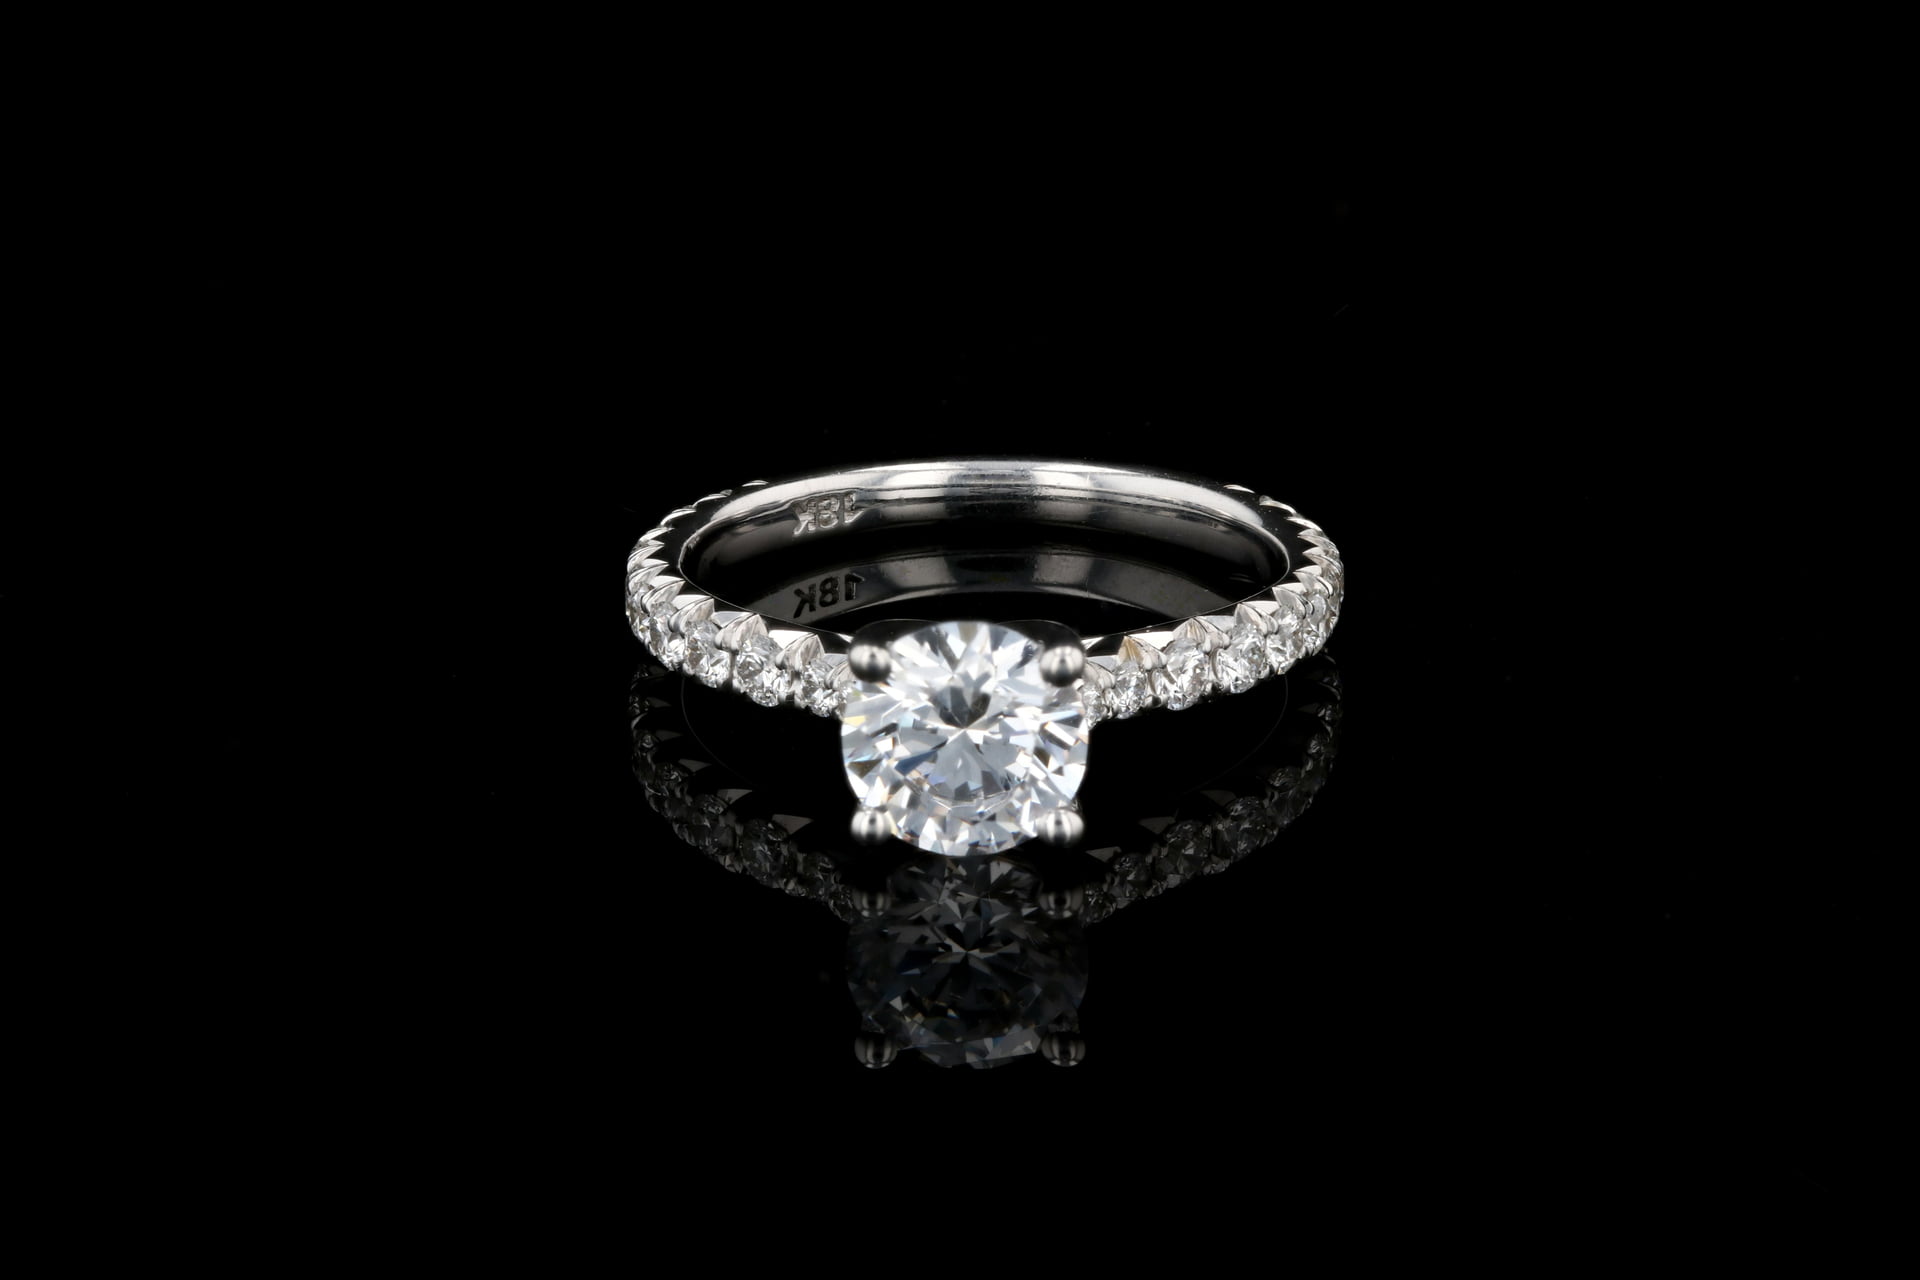 French Pave' Diamond Wedding Band - Nathan Alan Jewelers